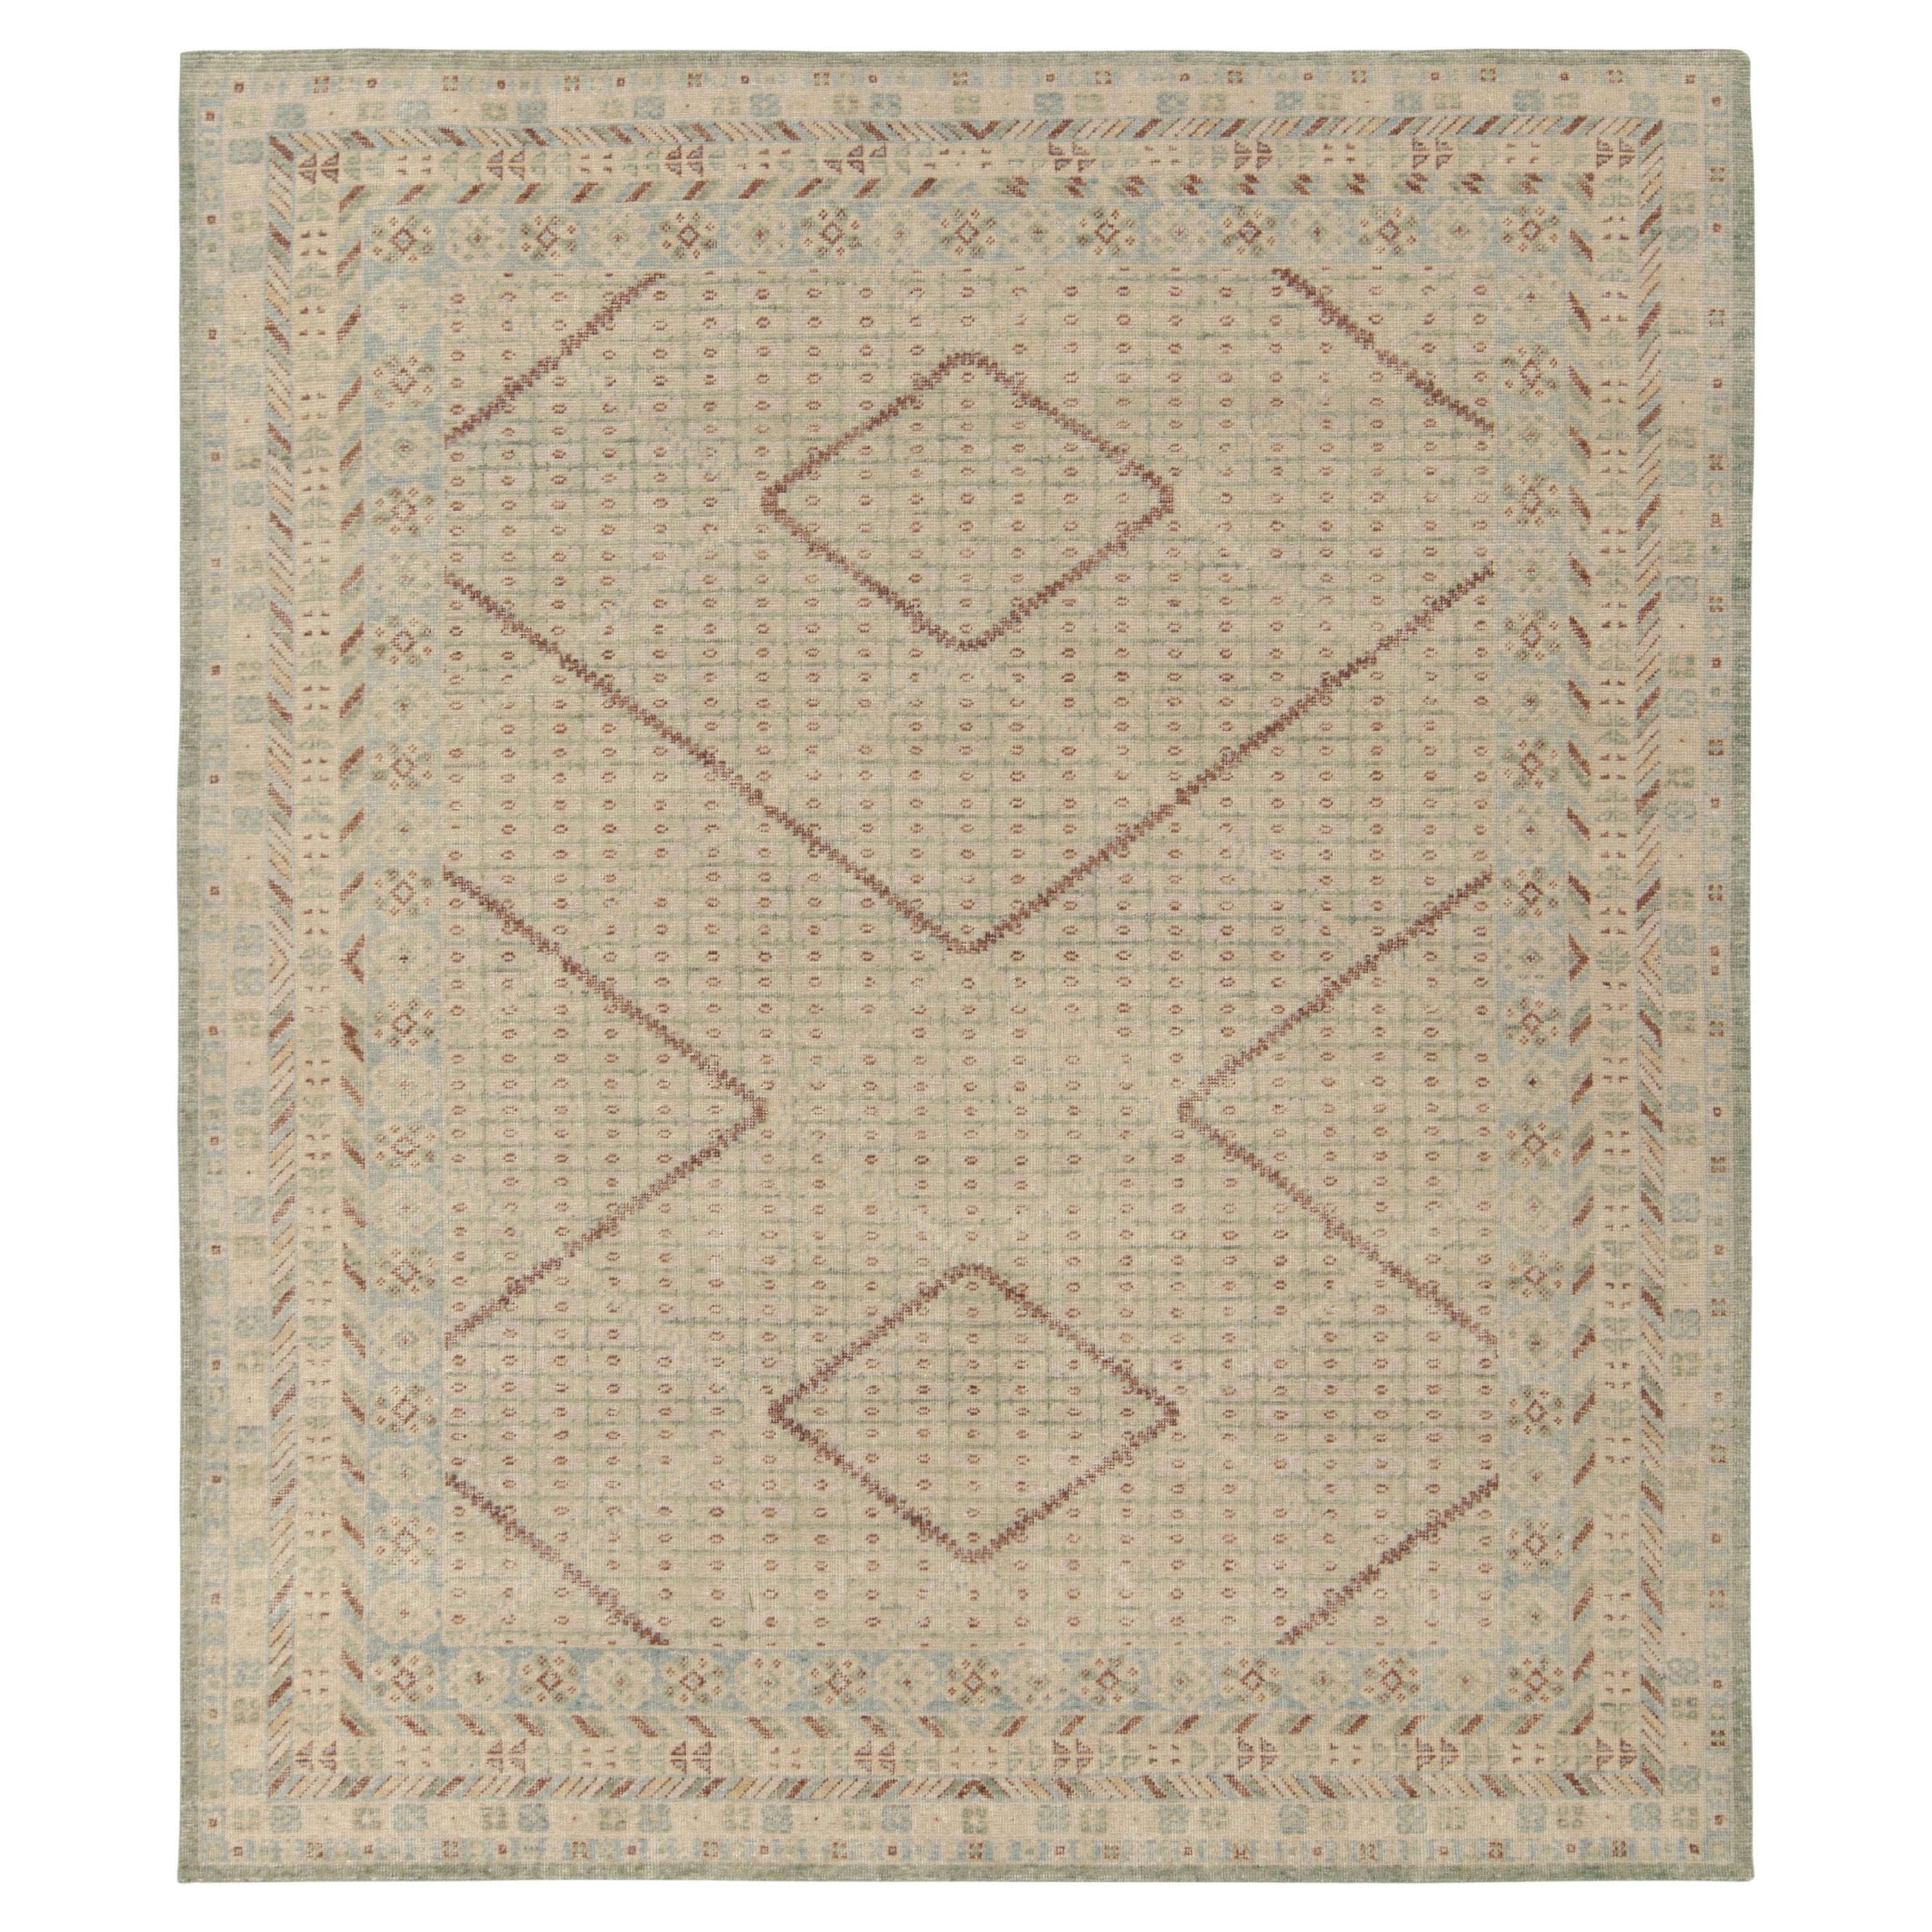 Teppich & Kilim''s Khotan-Stil Distressed Teppich in Beige Grün, Blau Geometrisches Muster